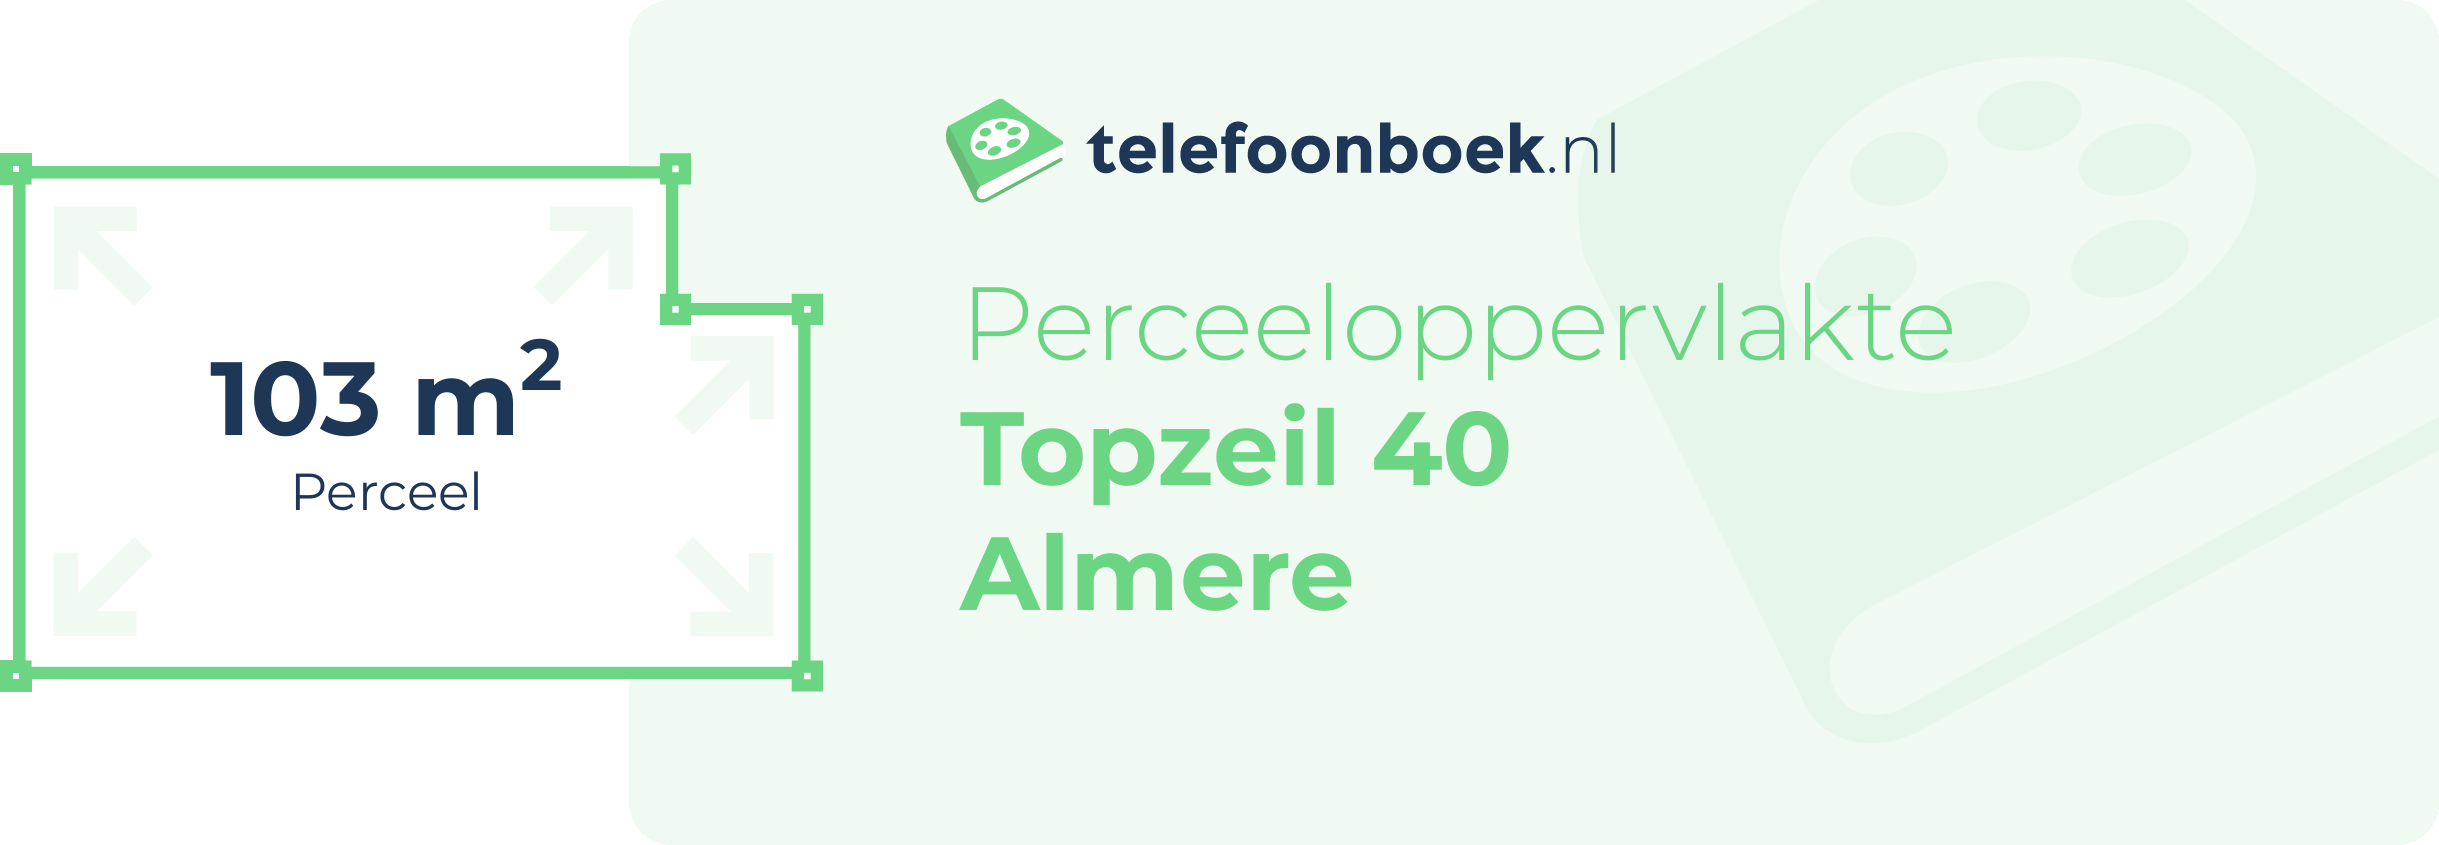 Perceeloppervlakte Topzeil 40 Almere